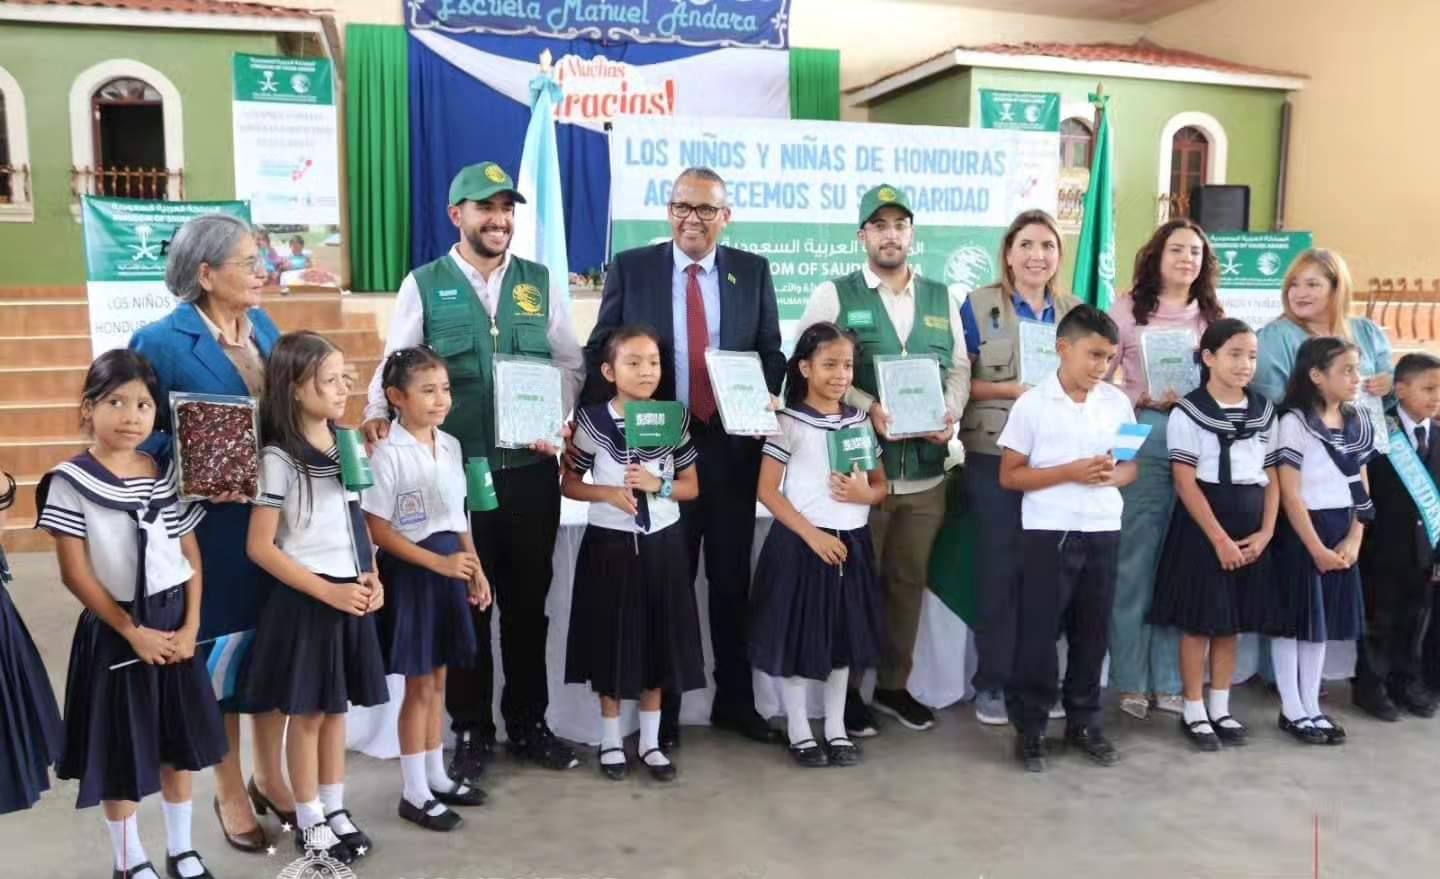 Arabia Saudita entrega donación de dátiles a niños de la Escuela Manuel Andará...